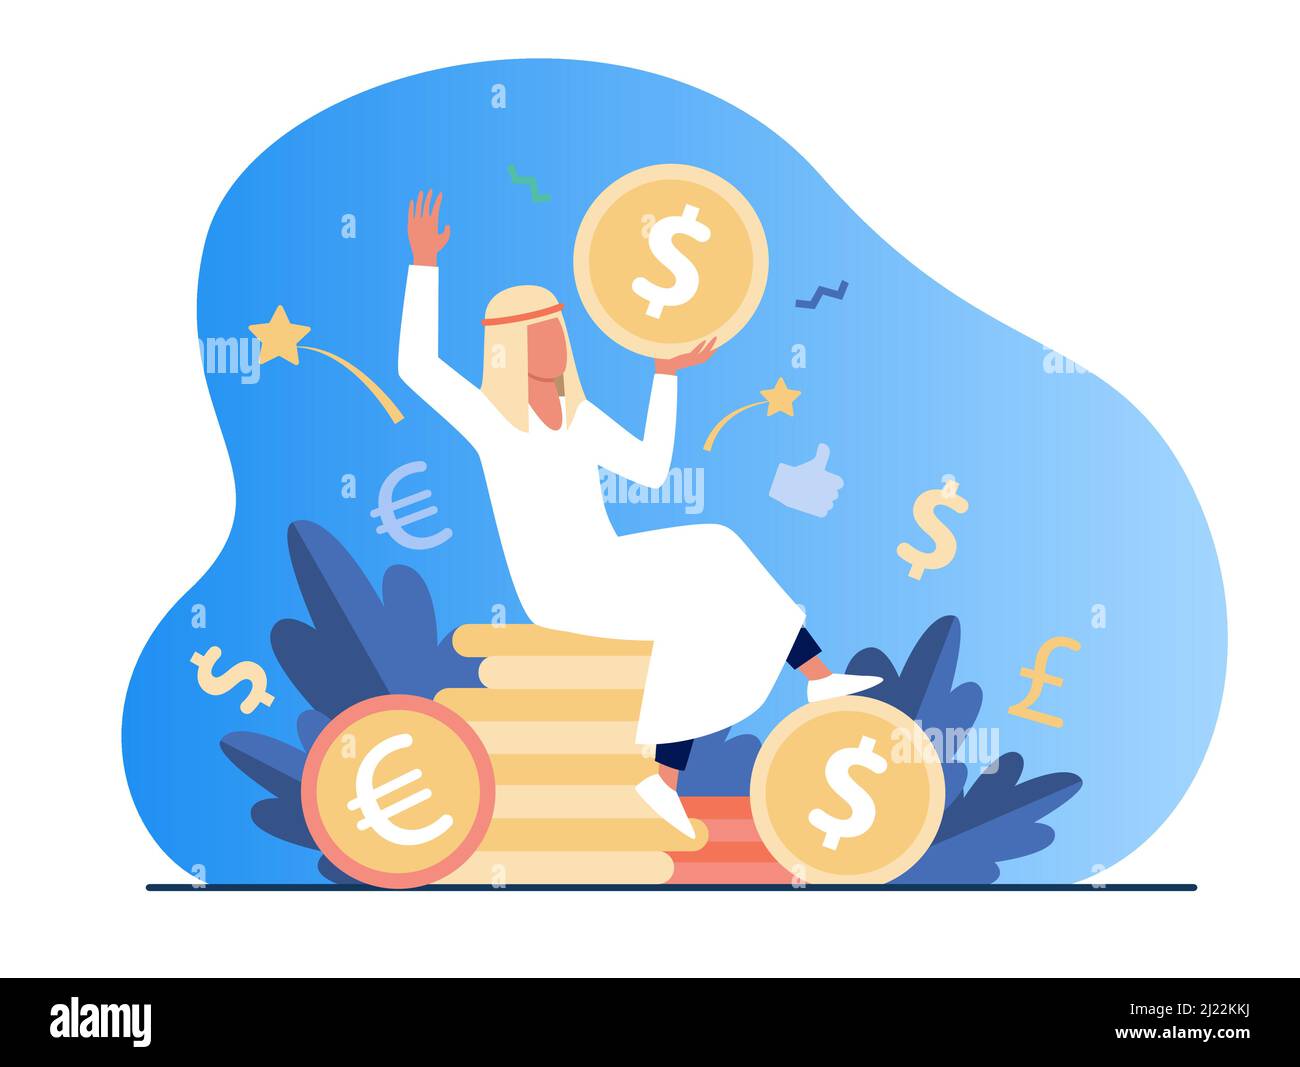 Arabischer Mann sitzt auf einem Haufen Goldmünzen. Vektor-Illustration für Dollar, Bargeld, Geld. Finanz- und Vermögenskonzept für Banner, Website-Design oder Land Stock Vektor